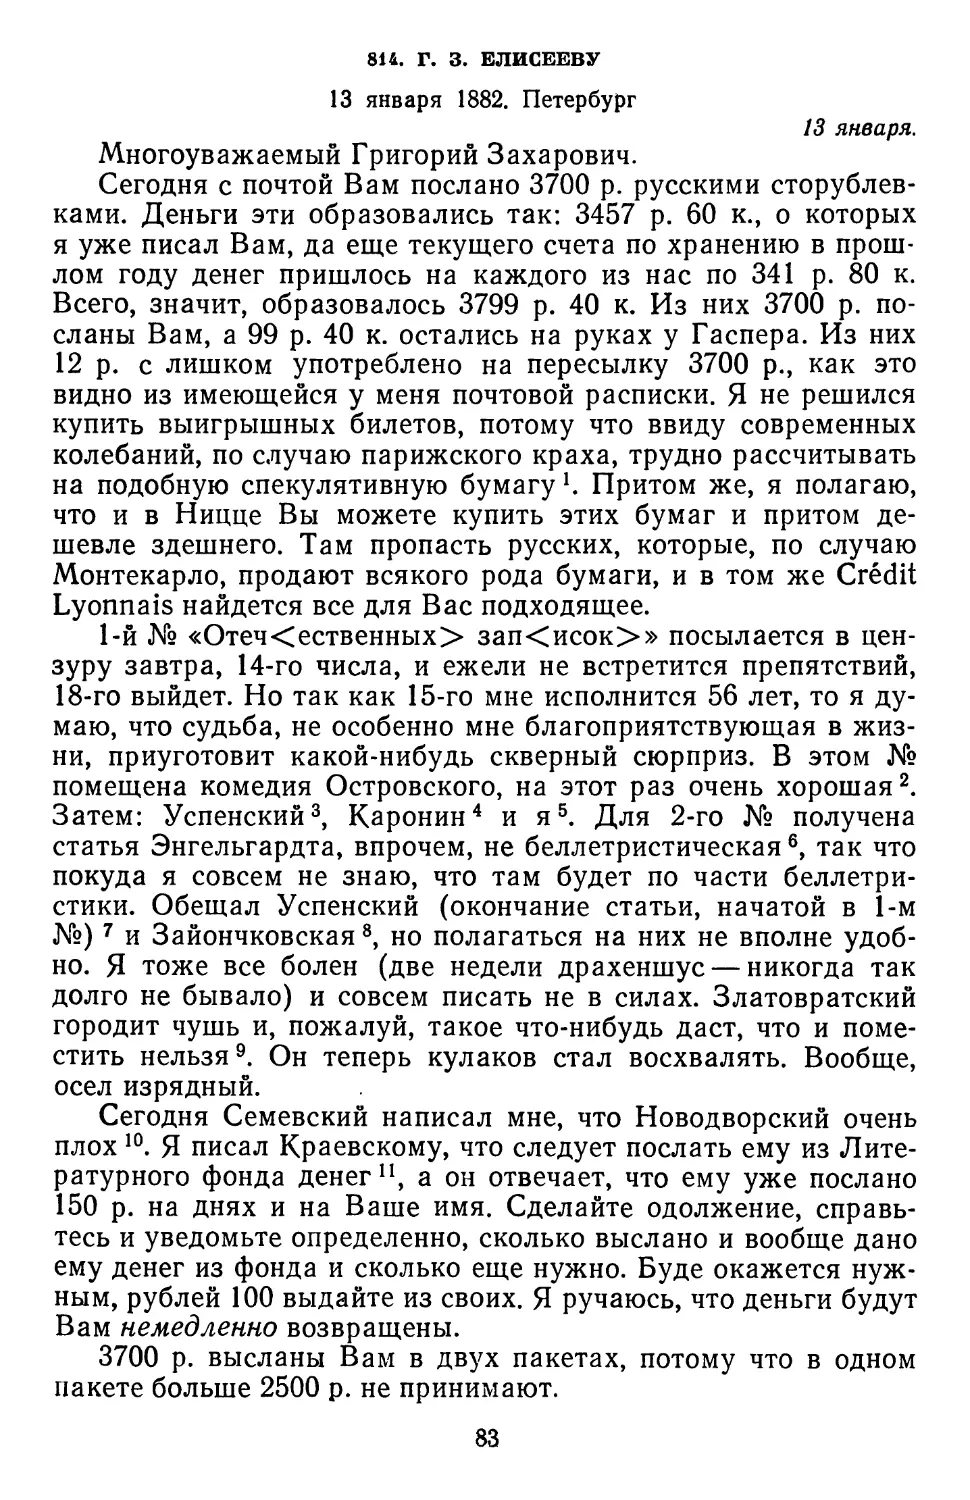 814.Г. 3. Елисееву. 13 января 1882. Петербург